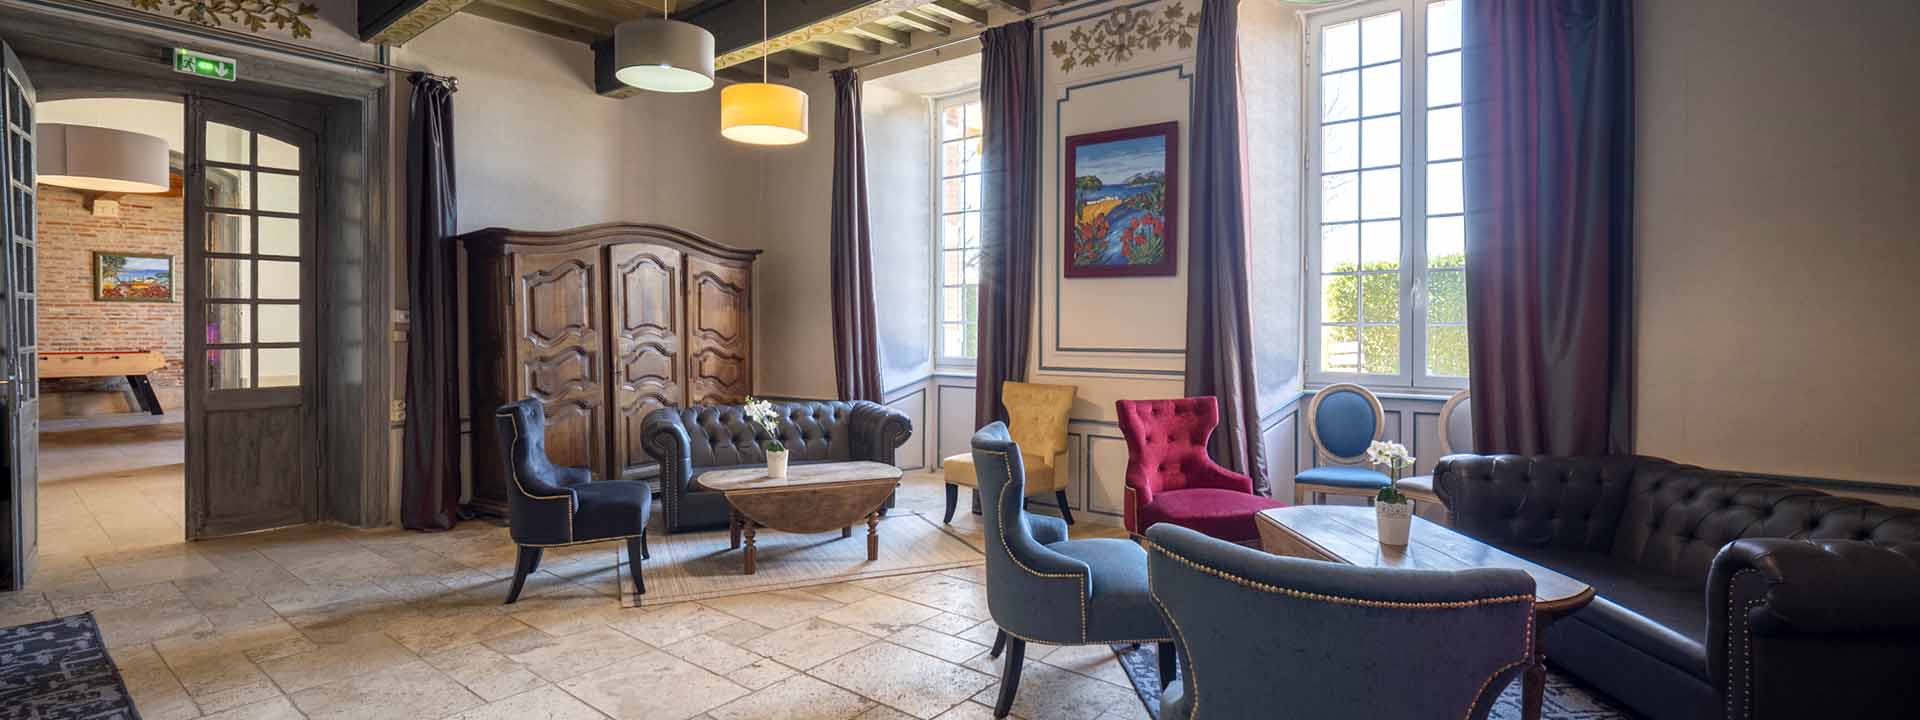 Hotel-Montauban-82-Chateau-de-Loubejac-44